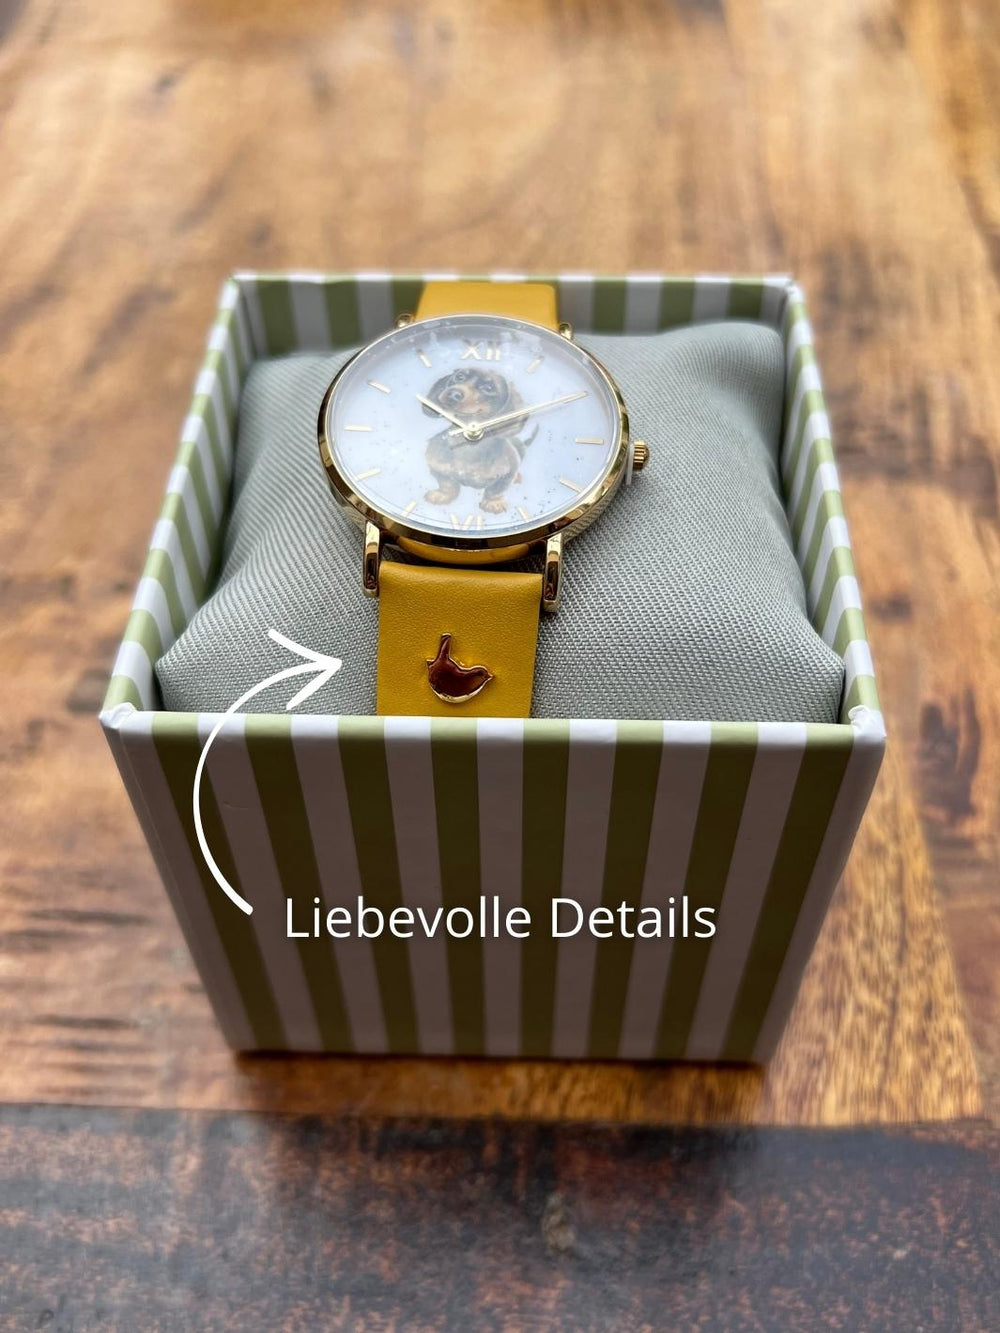 Die Armbanduhr Dackel von Wrendale Designs hat liebevolle Details, wie das kleine Vögelchen auf dem Uhrenband.